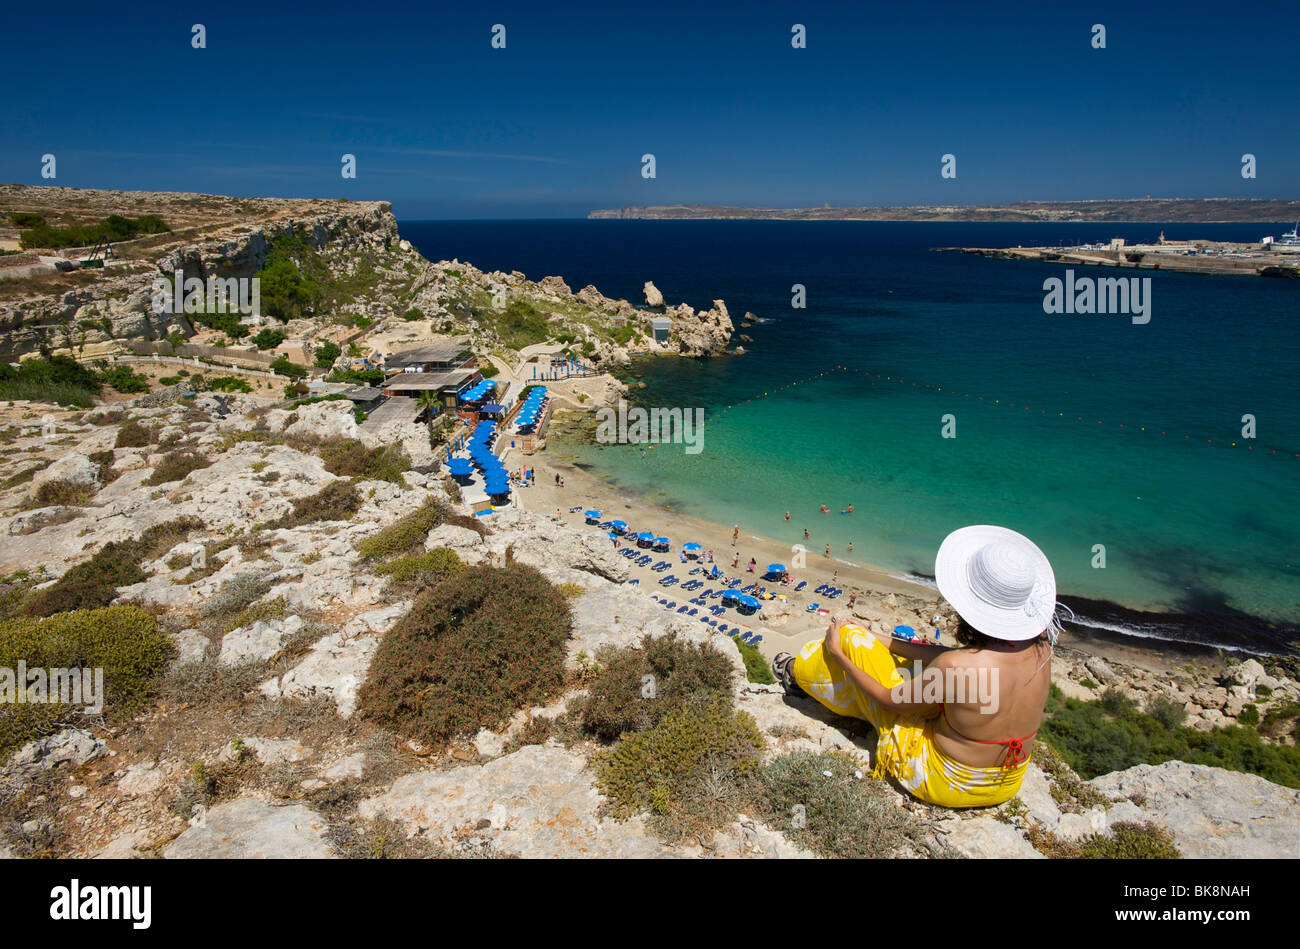 Woman looking on Paradise Bay in Cirkewwa, Malta, Europe Stock Photo